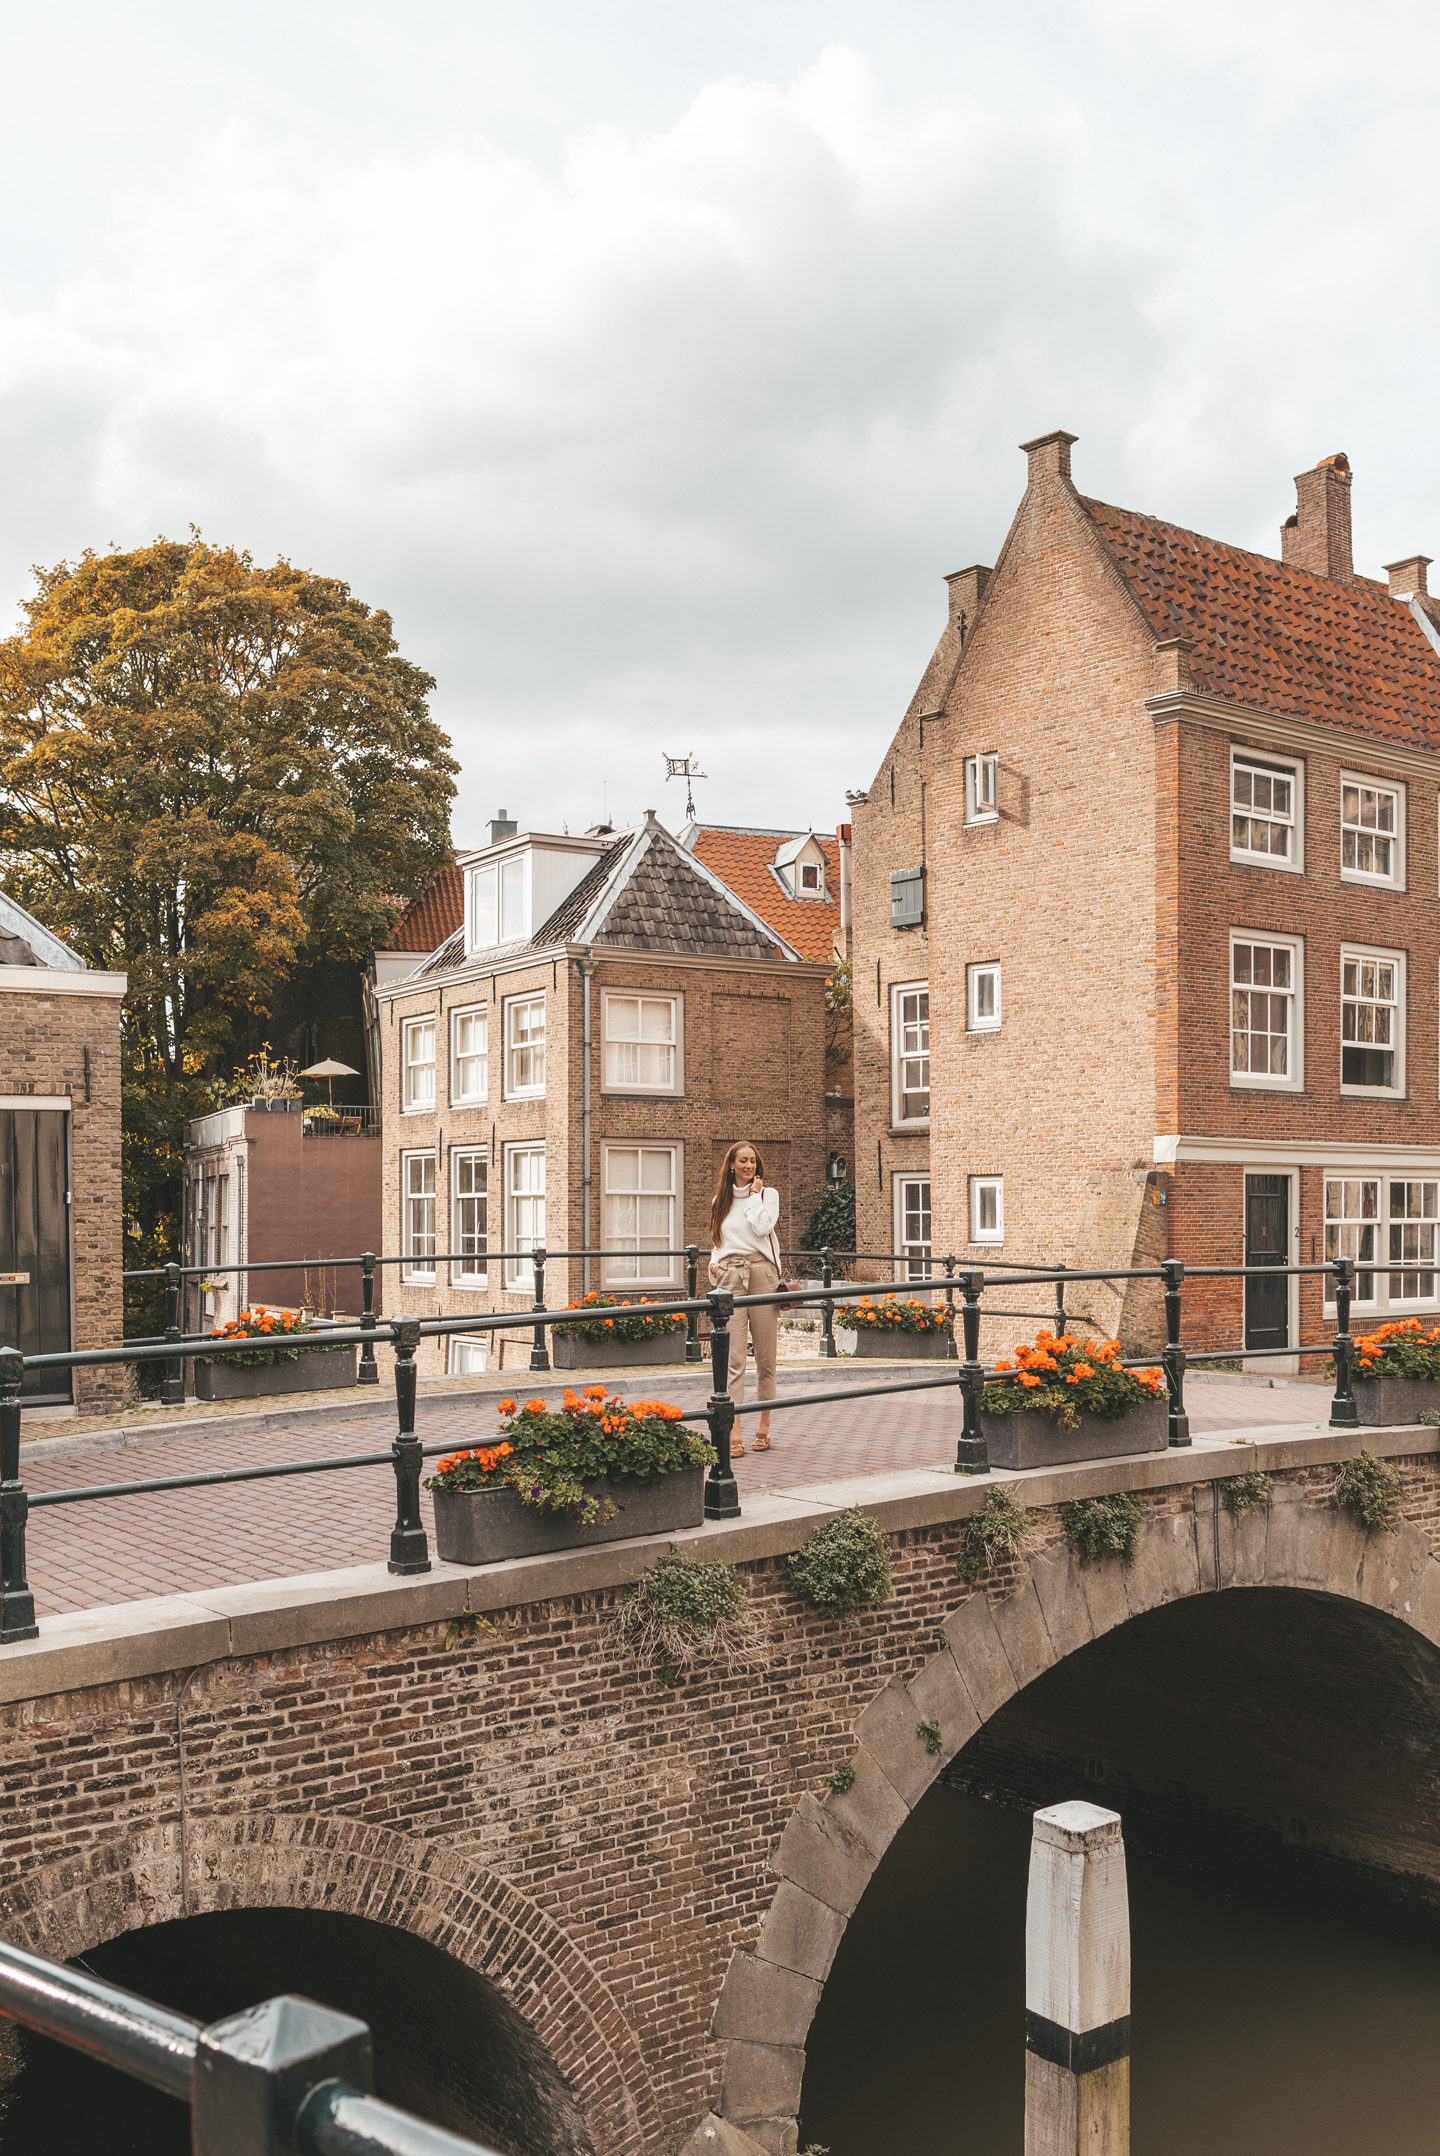 Het oude centrum van Dordrecht